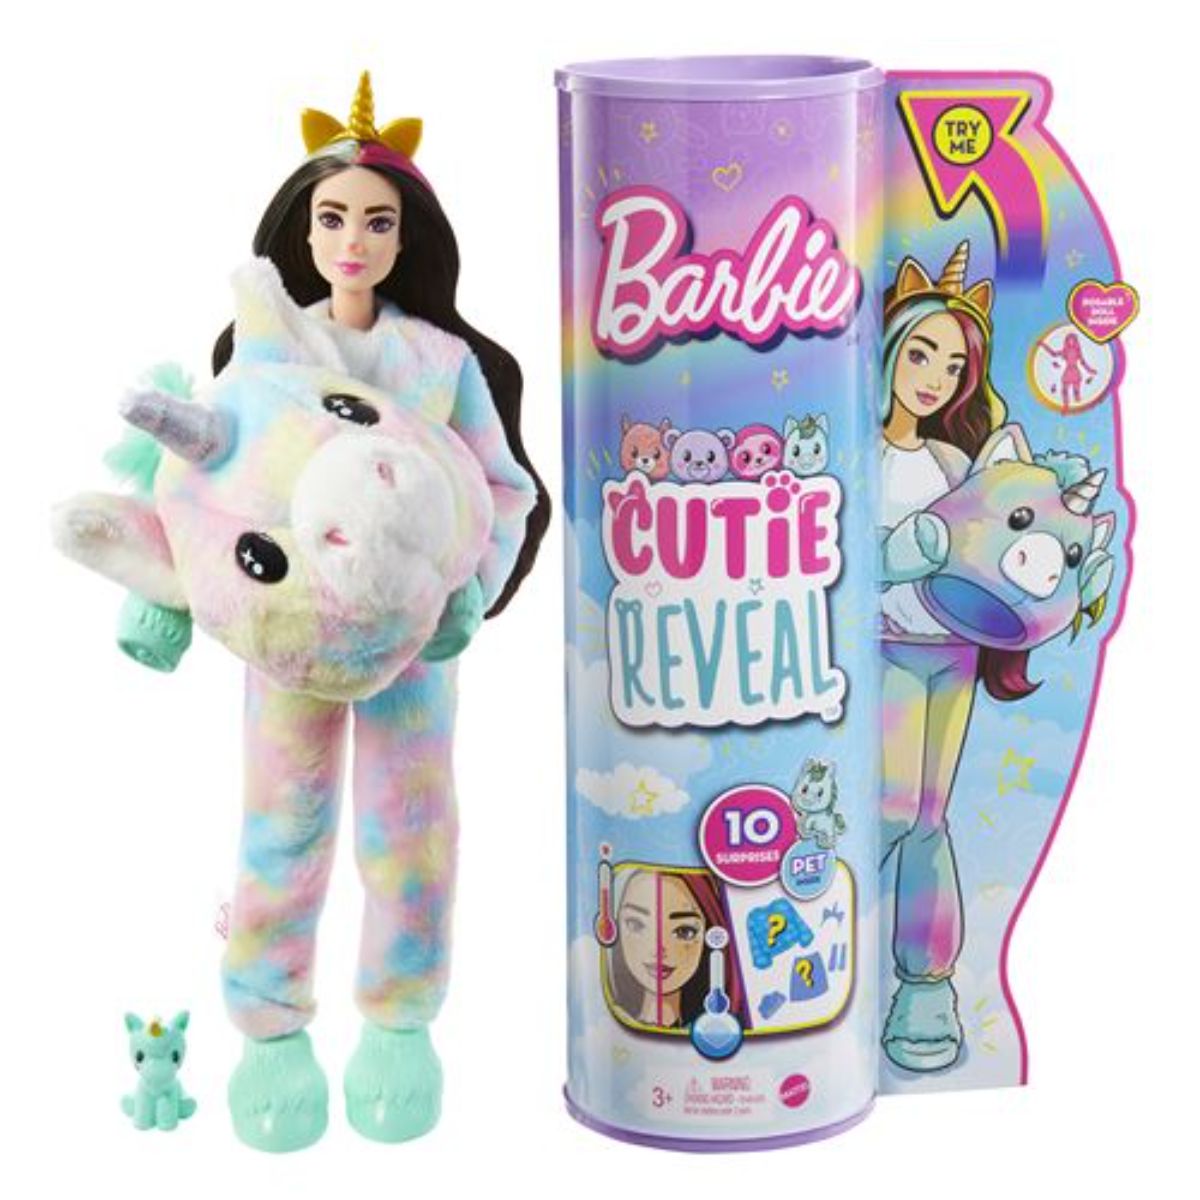 Papusa Barbie Cutie Reveal, Unicorn, cu 10 surprize Barbie imagine noua responsabilitatesociala.ro